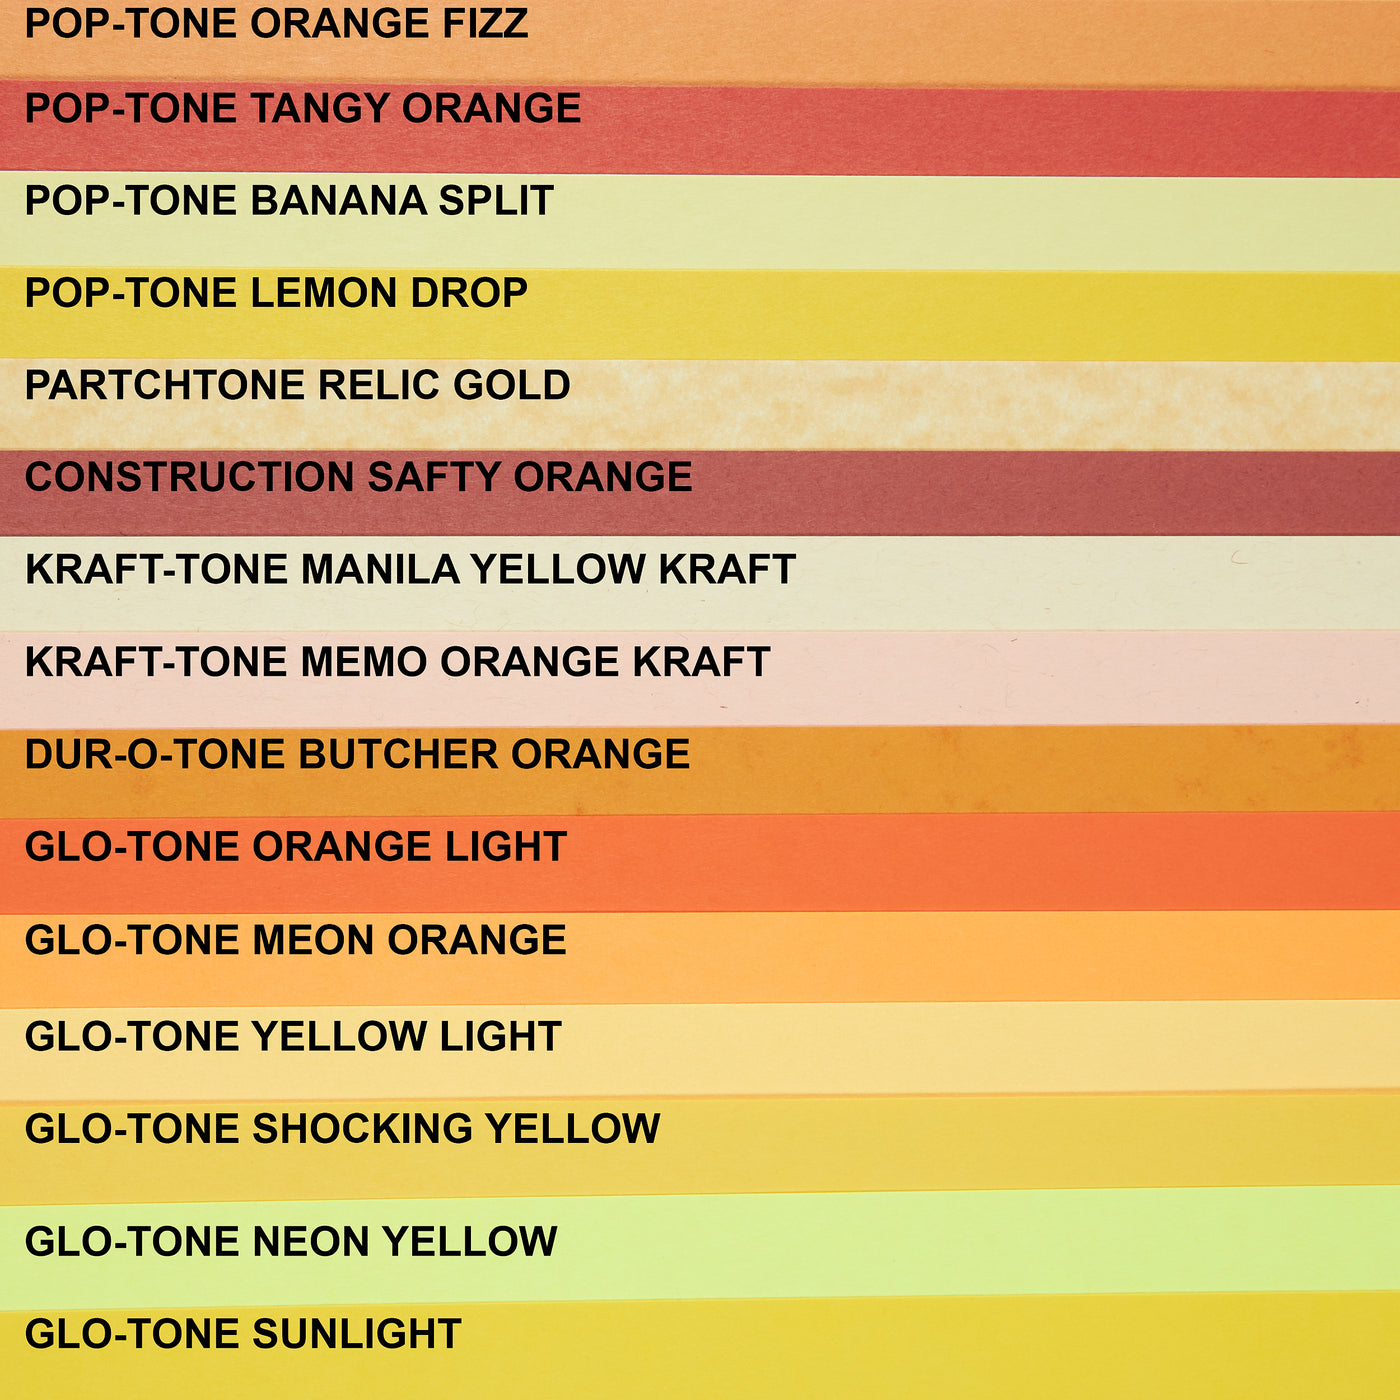 Orange Fizz Cardstock (Pop-Tone, Cover Weight)